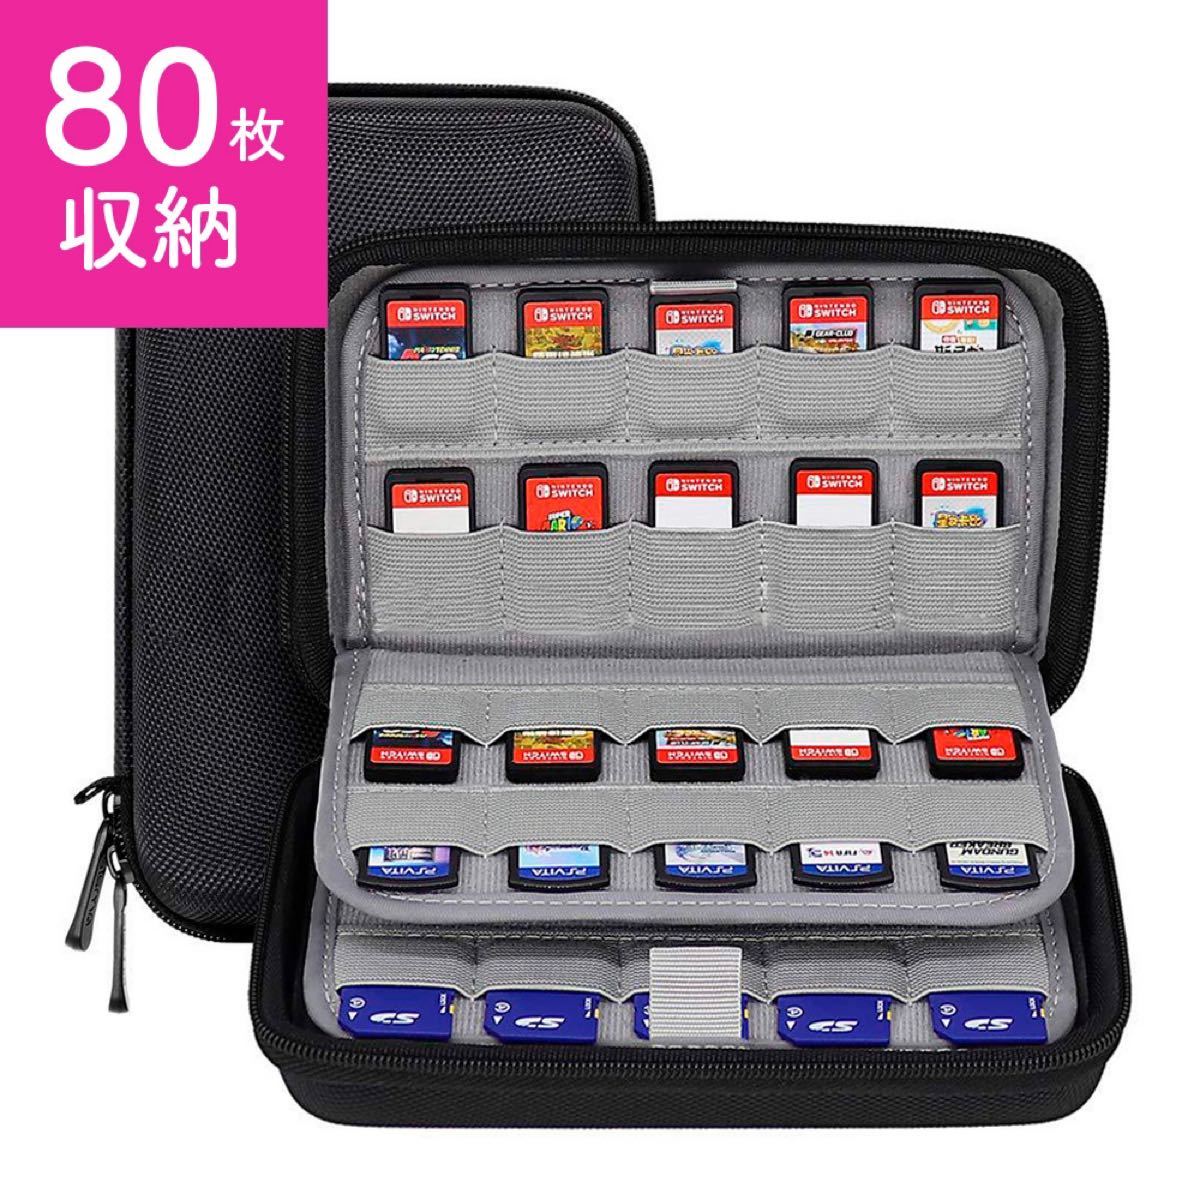 【80枚収納】Nintendo Switch ゲームソフトカードケースコンパクト 3DSLL 収納バッグ ニンテンドー